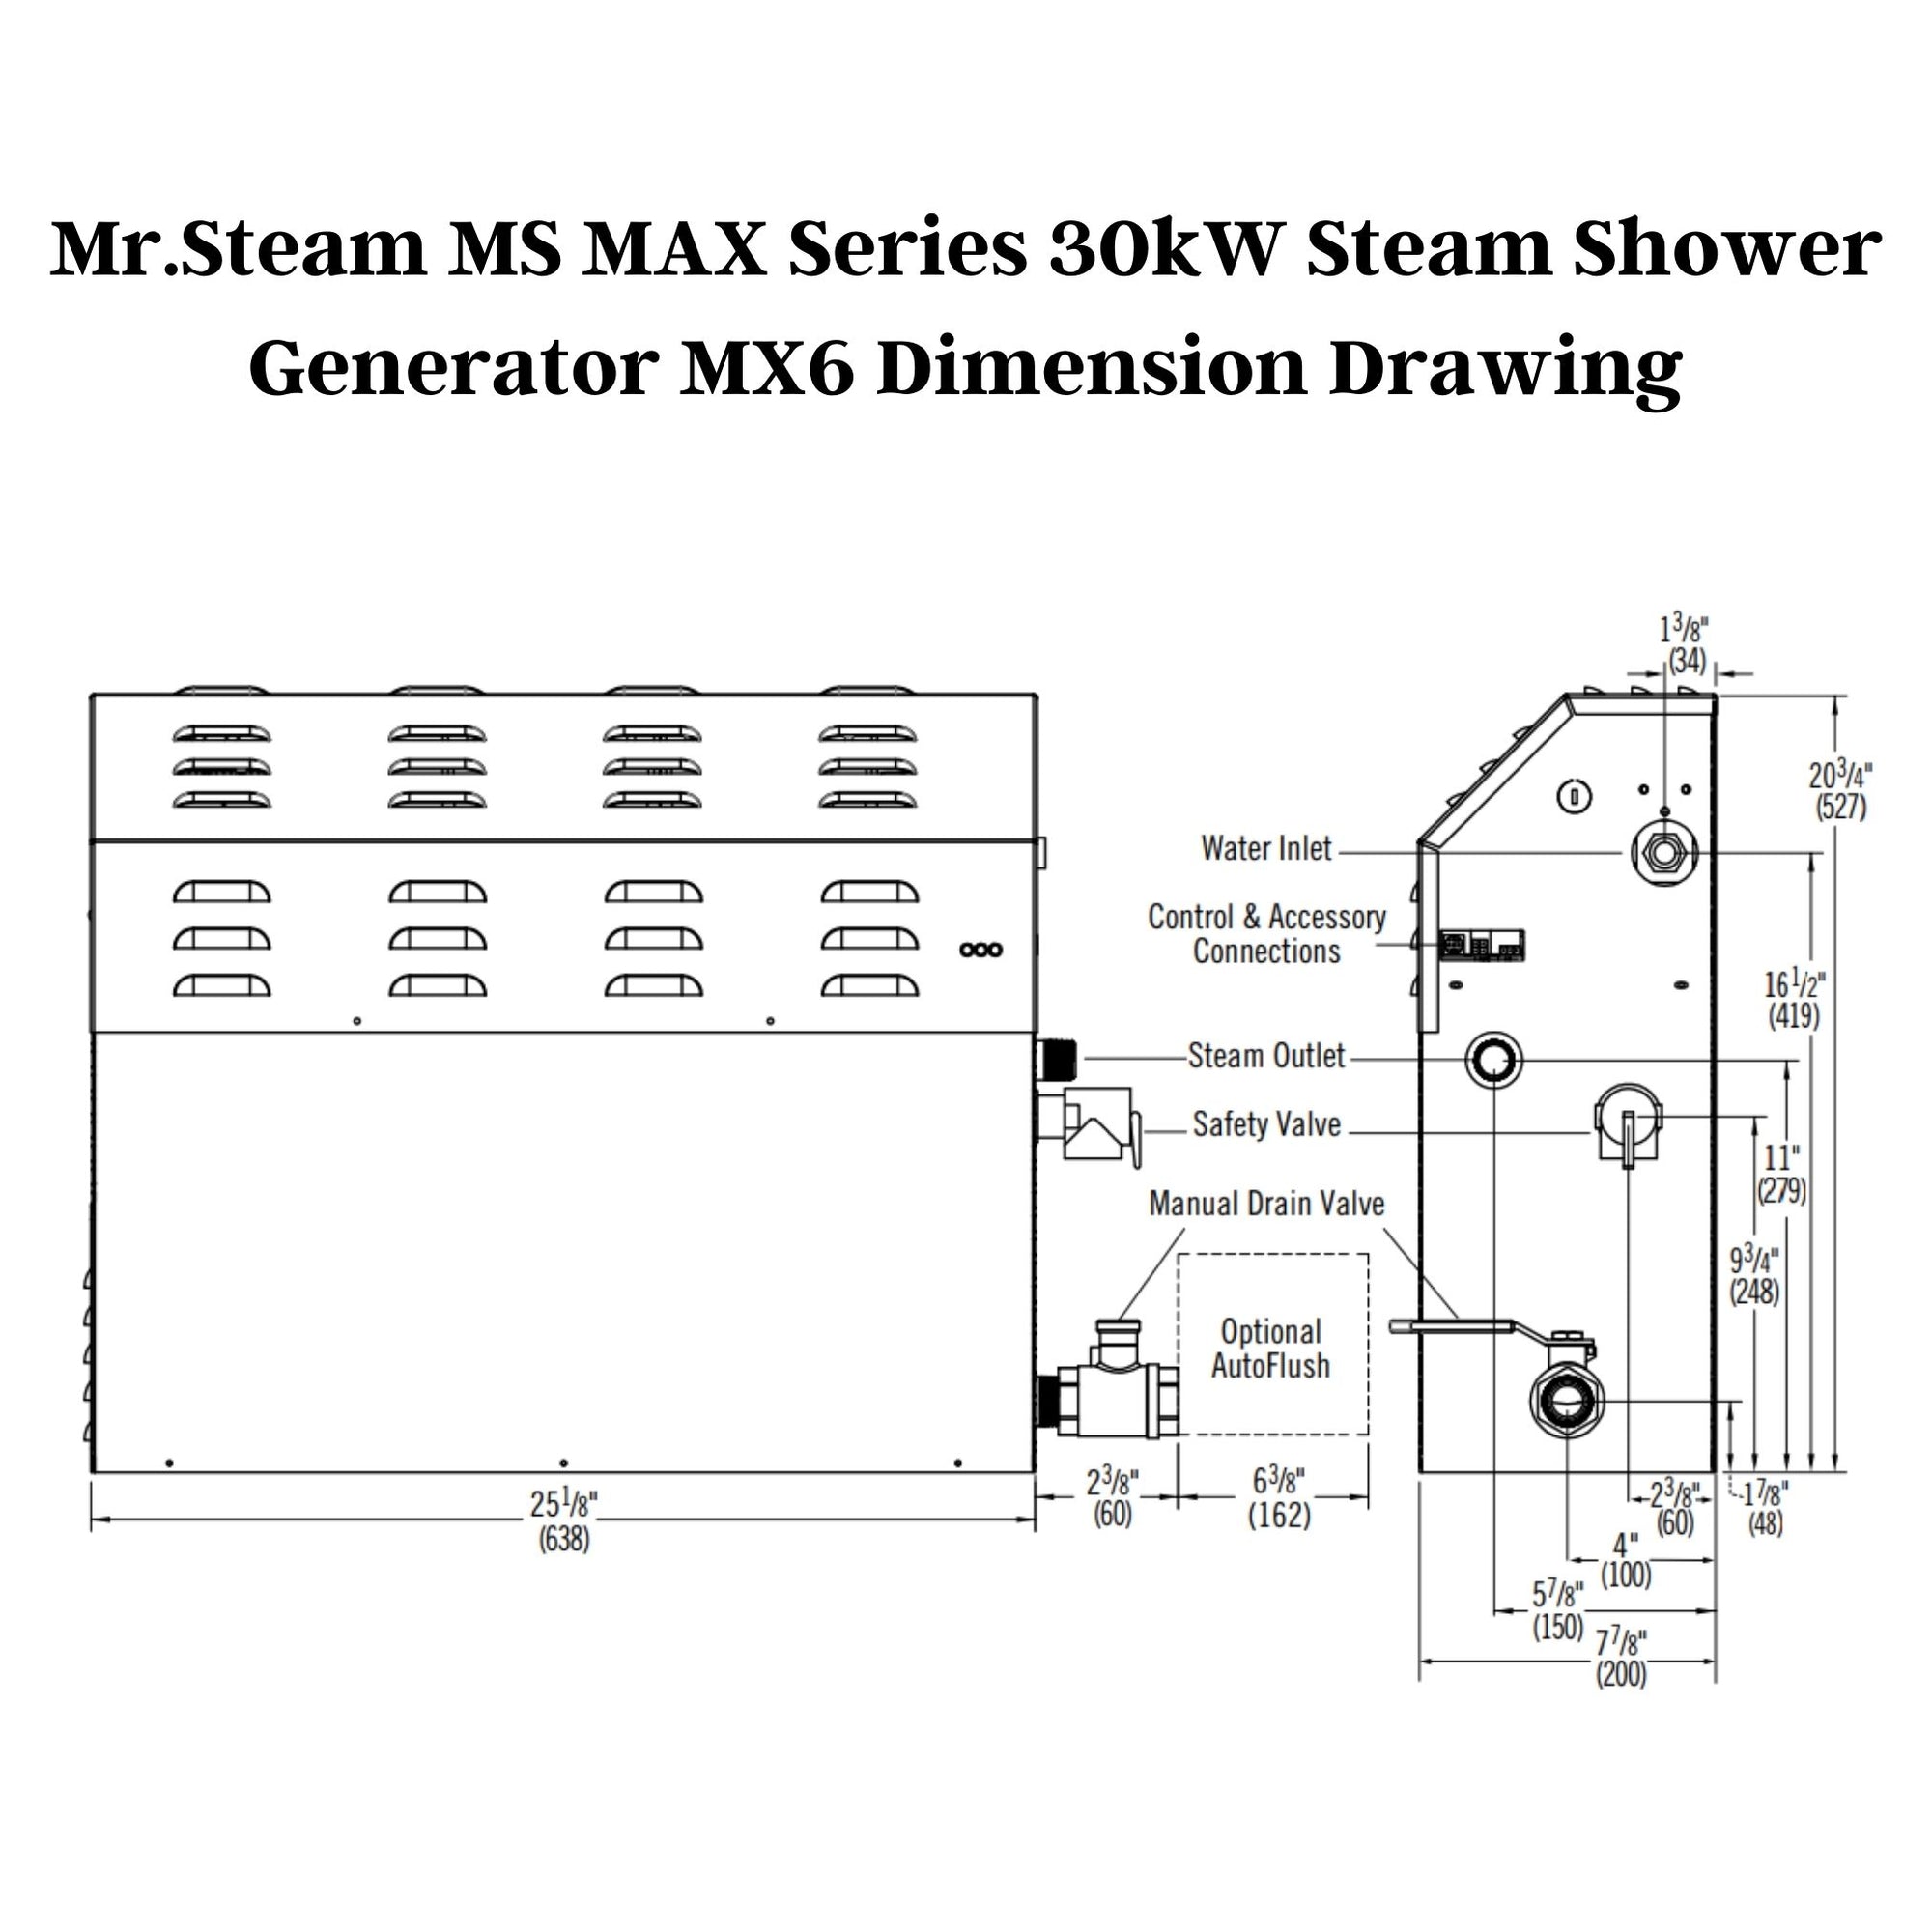 Mr. Steam 30kW MS MAX Series Steam Shower Generator MX6